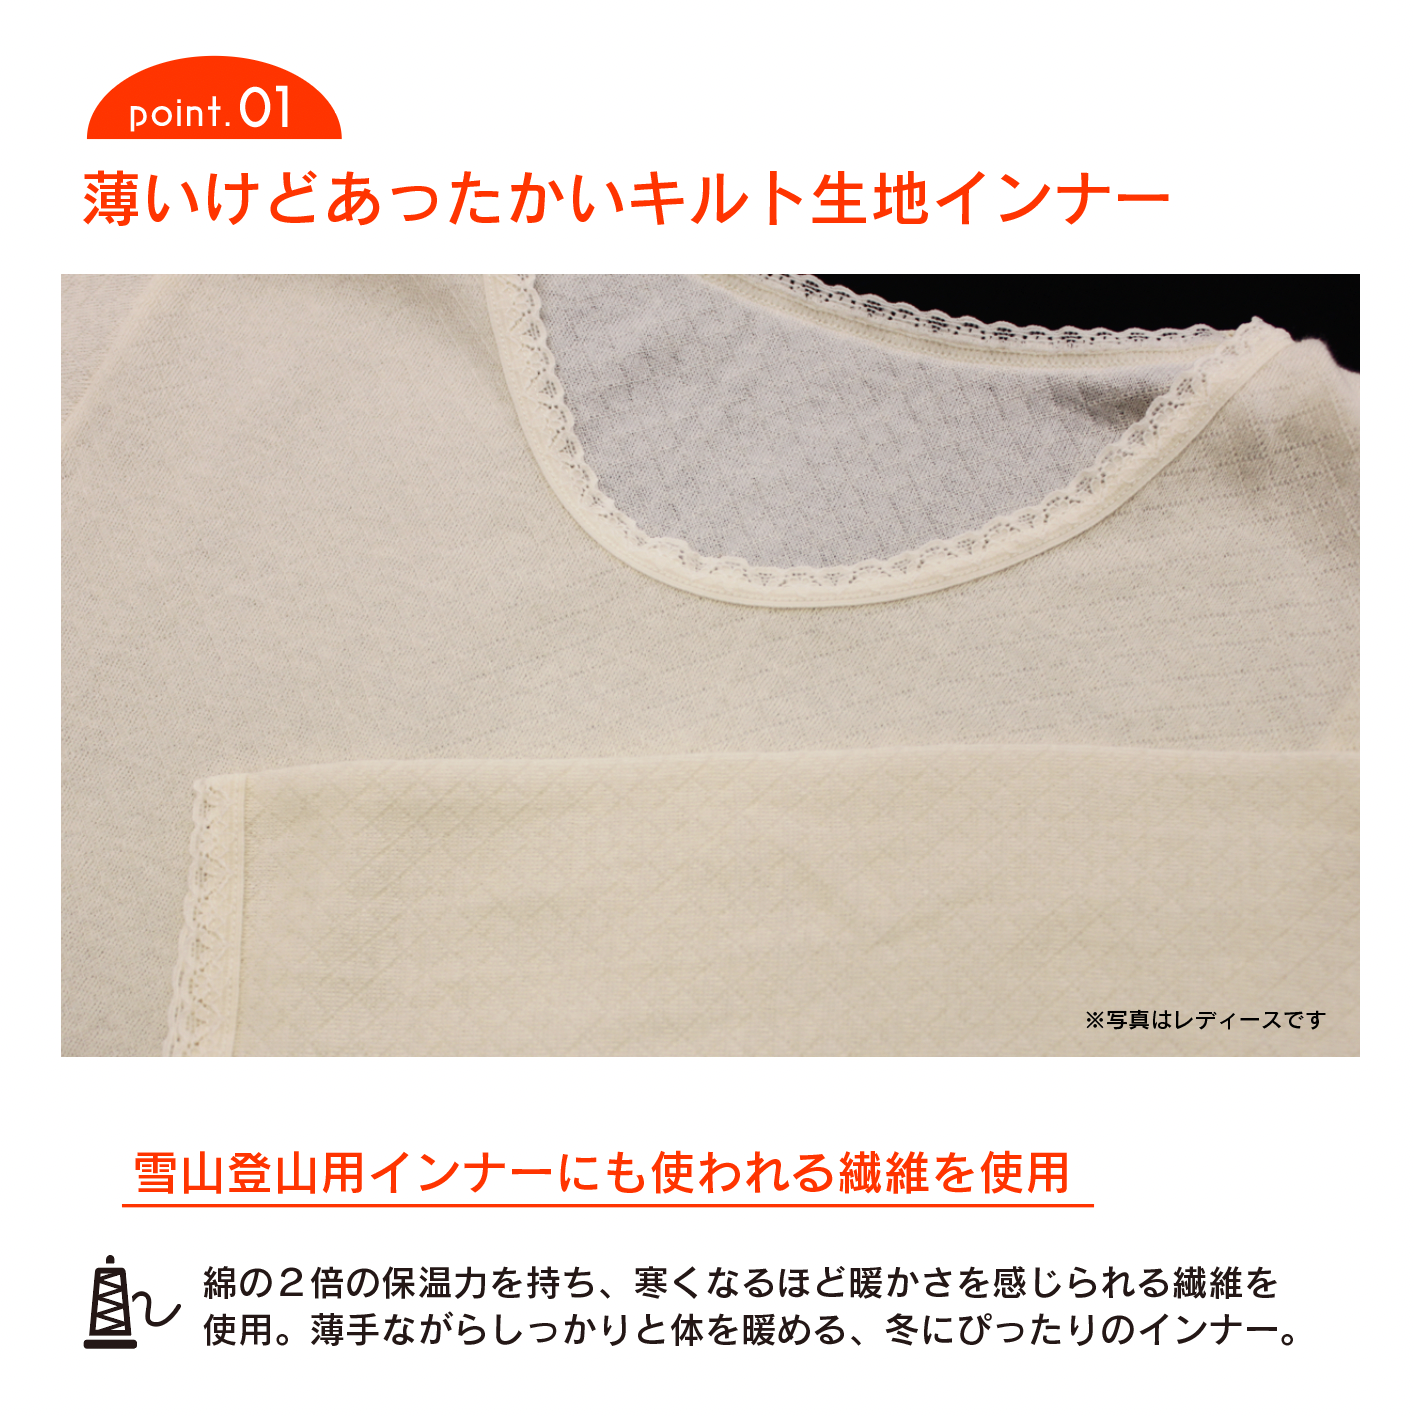 薄くてあったかいメディロン・キルト生地インナーシャツ(５枚セット)